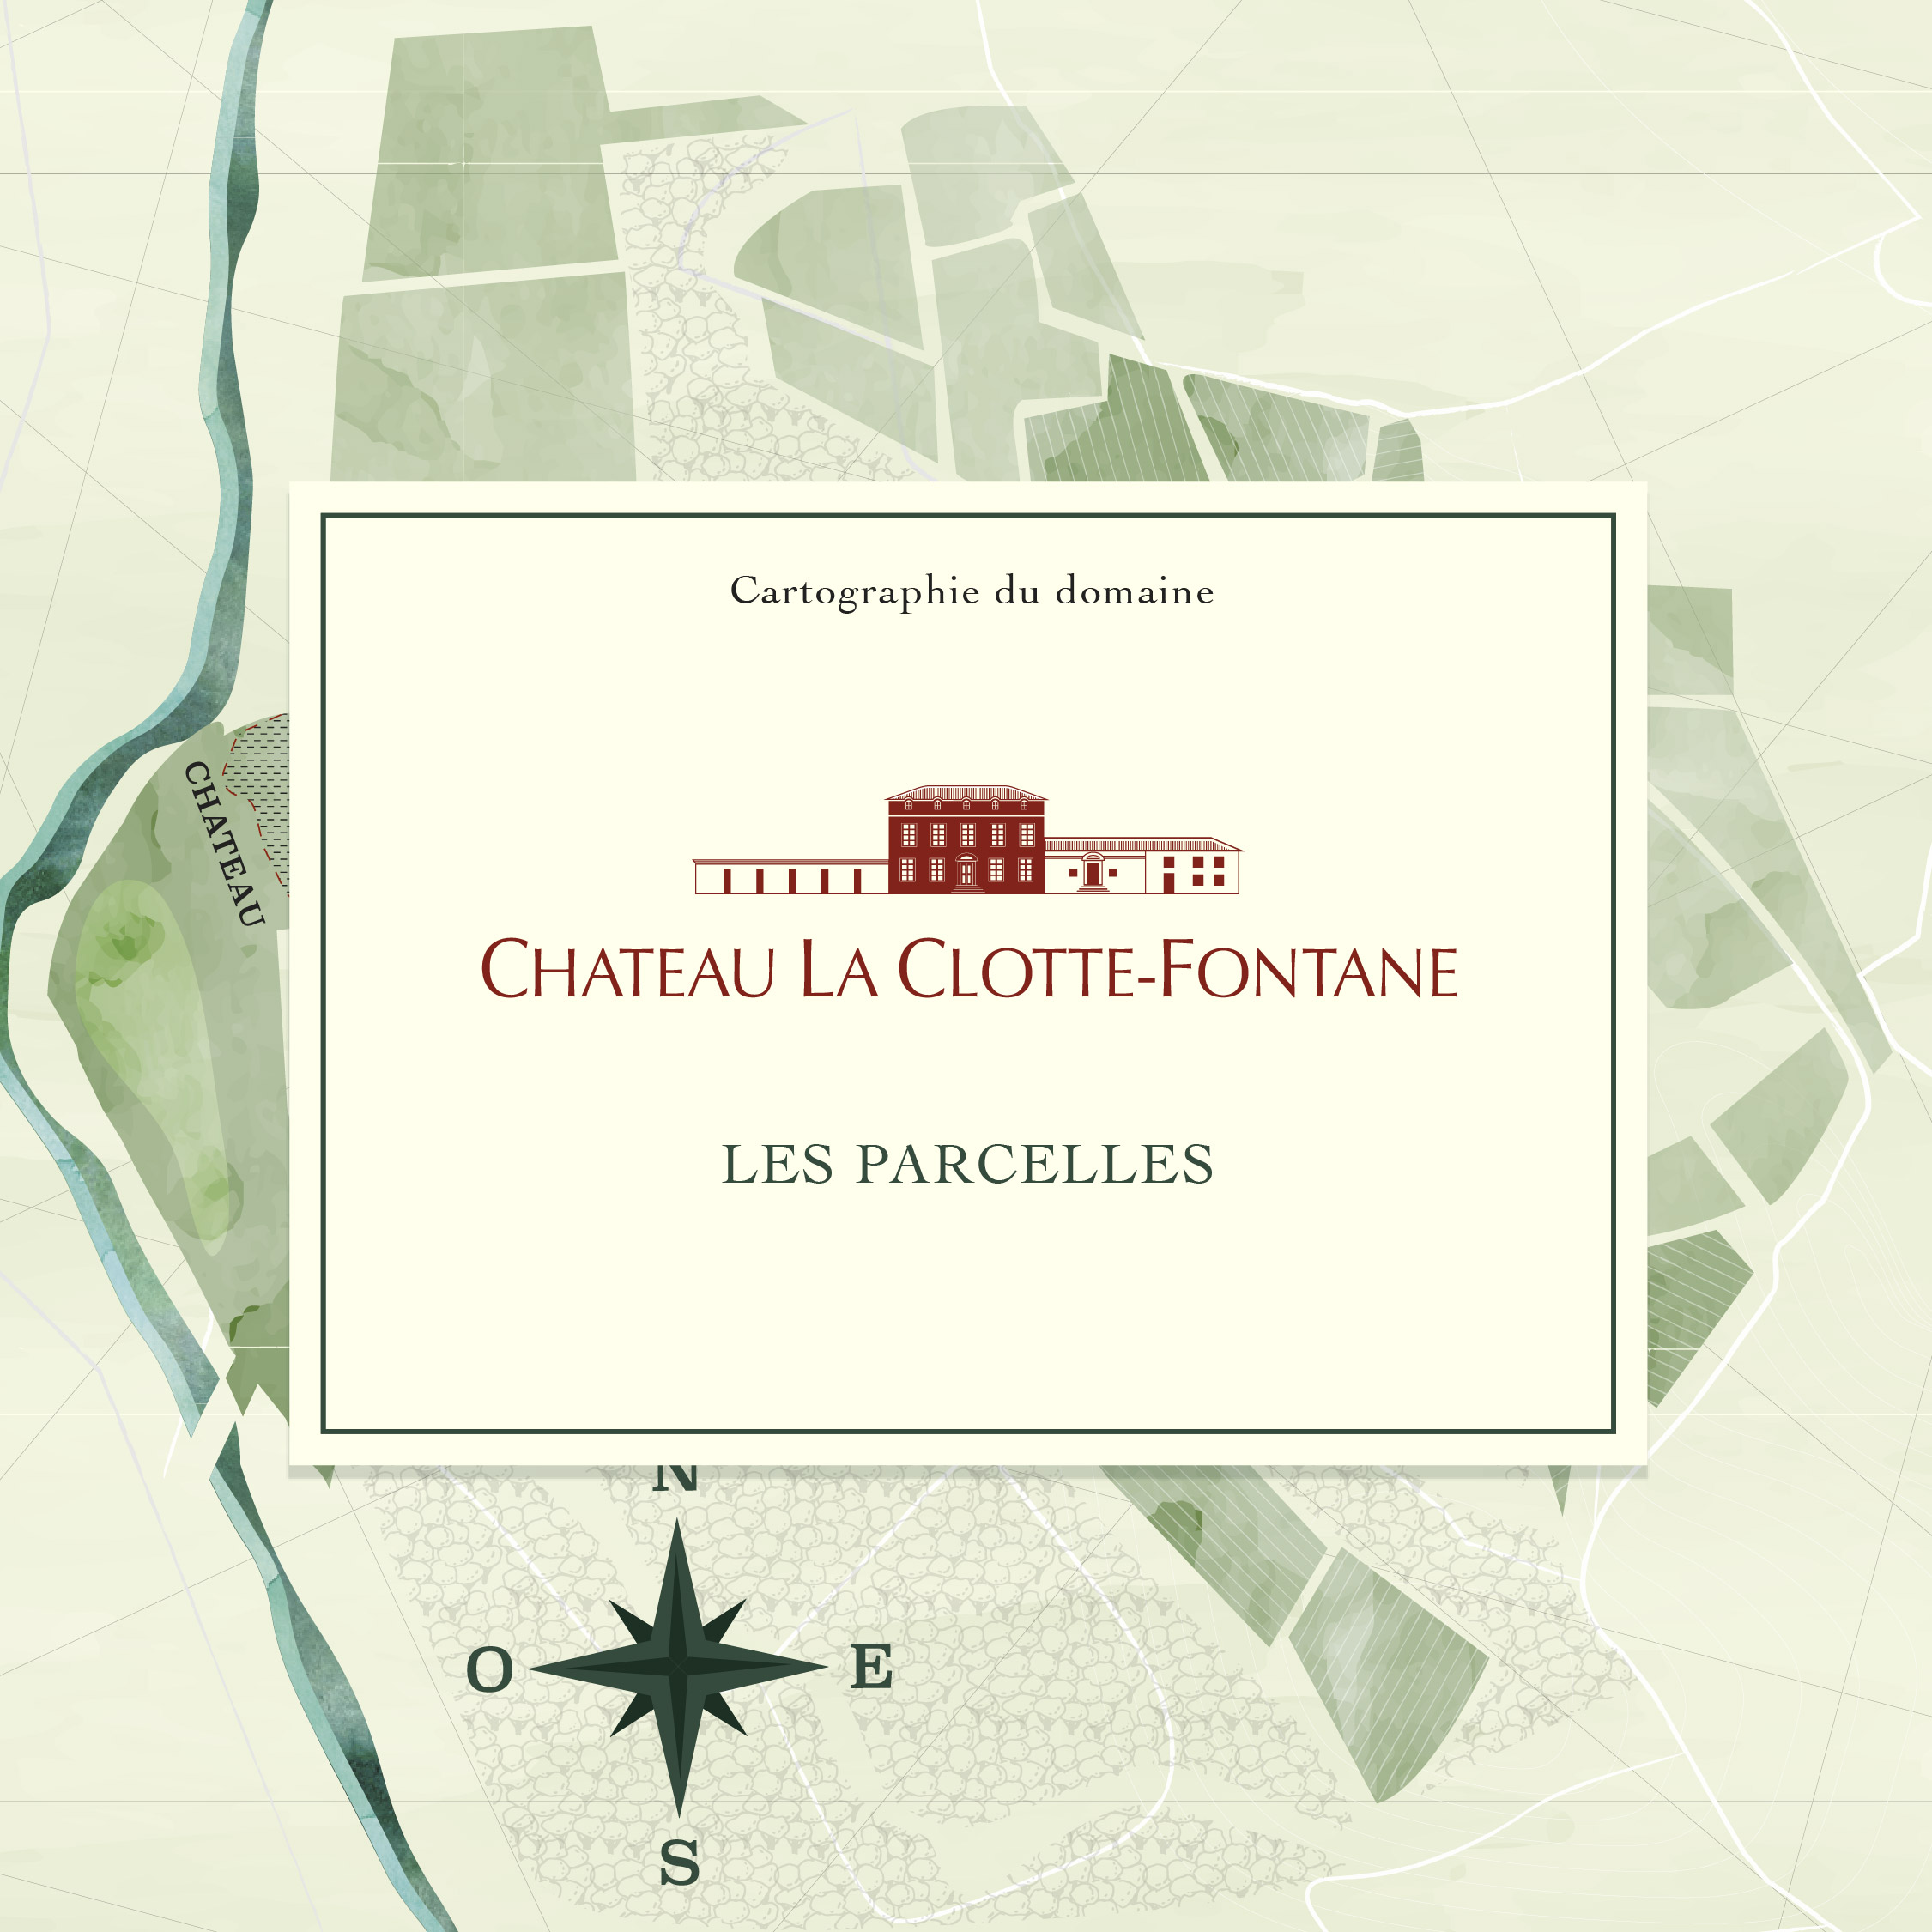 Cartographie domaine viticole Château La Clotte Fontane à Salinelles